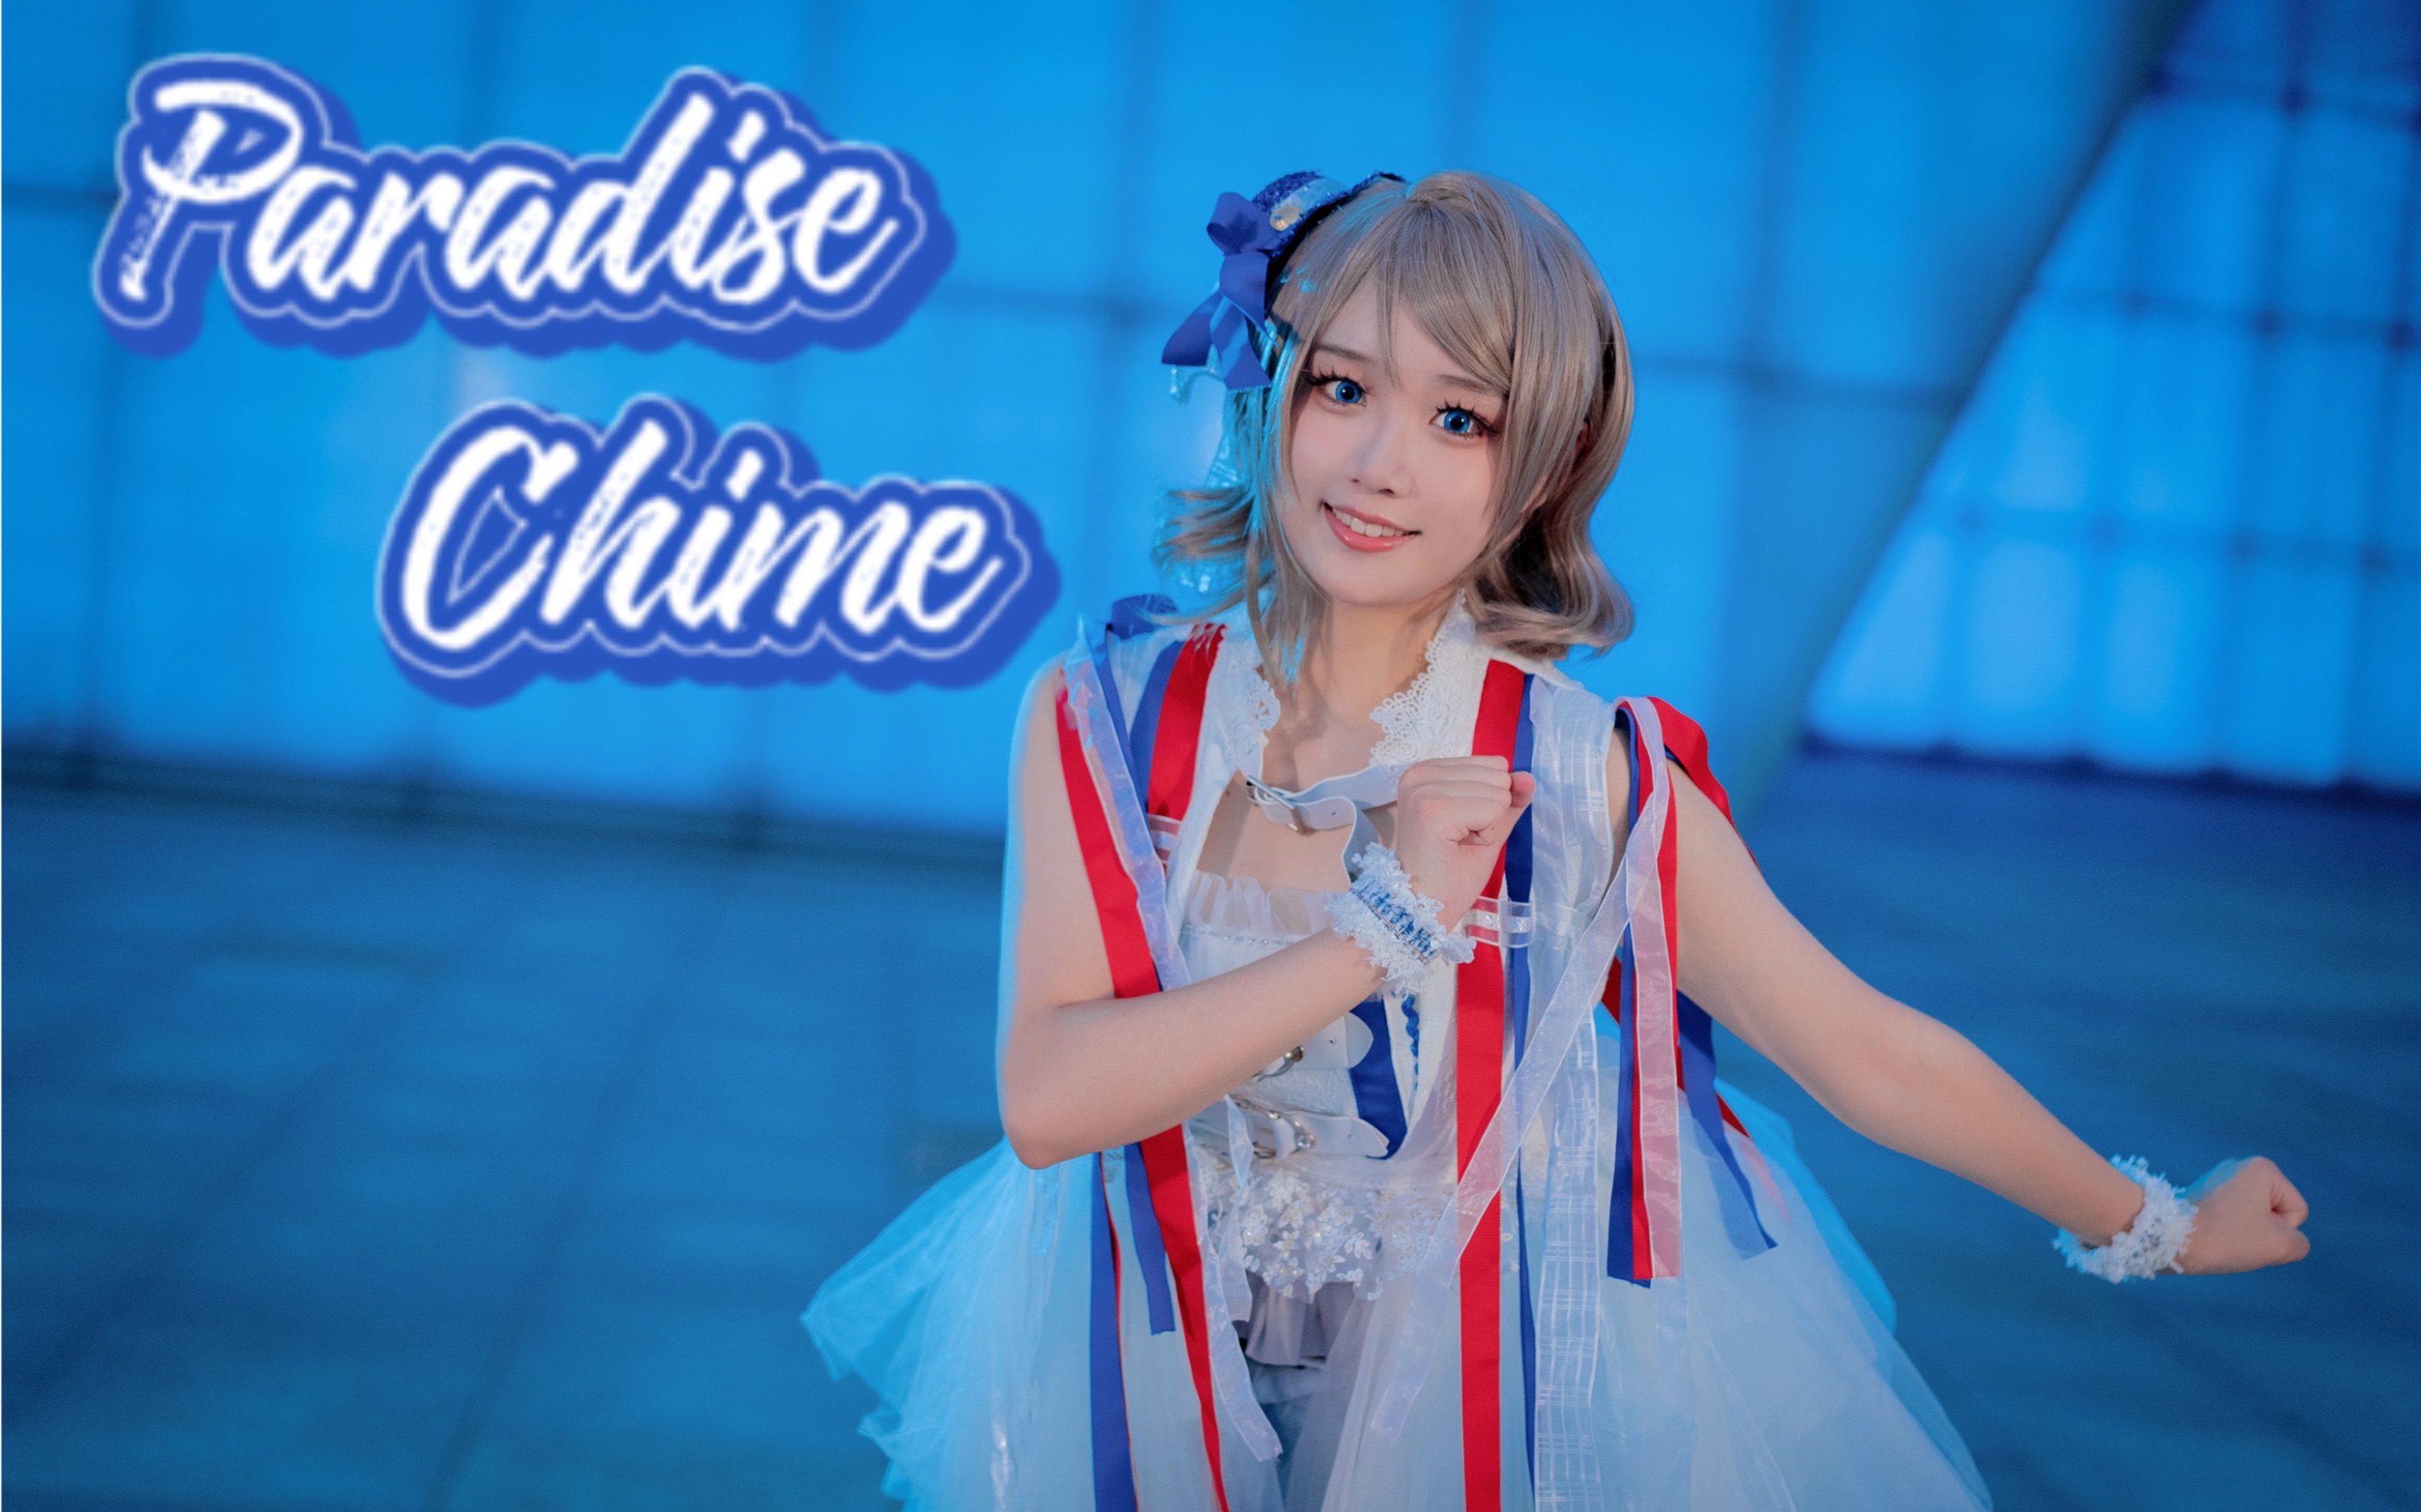 【小启】Paradise Chime